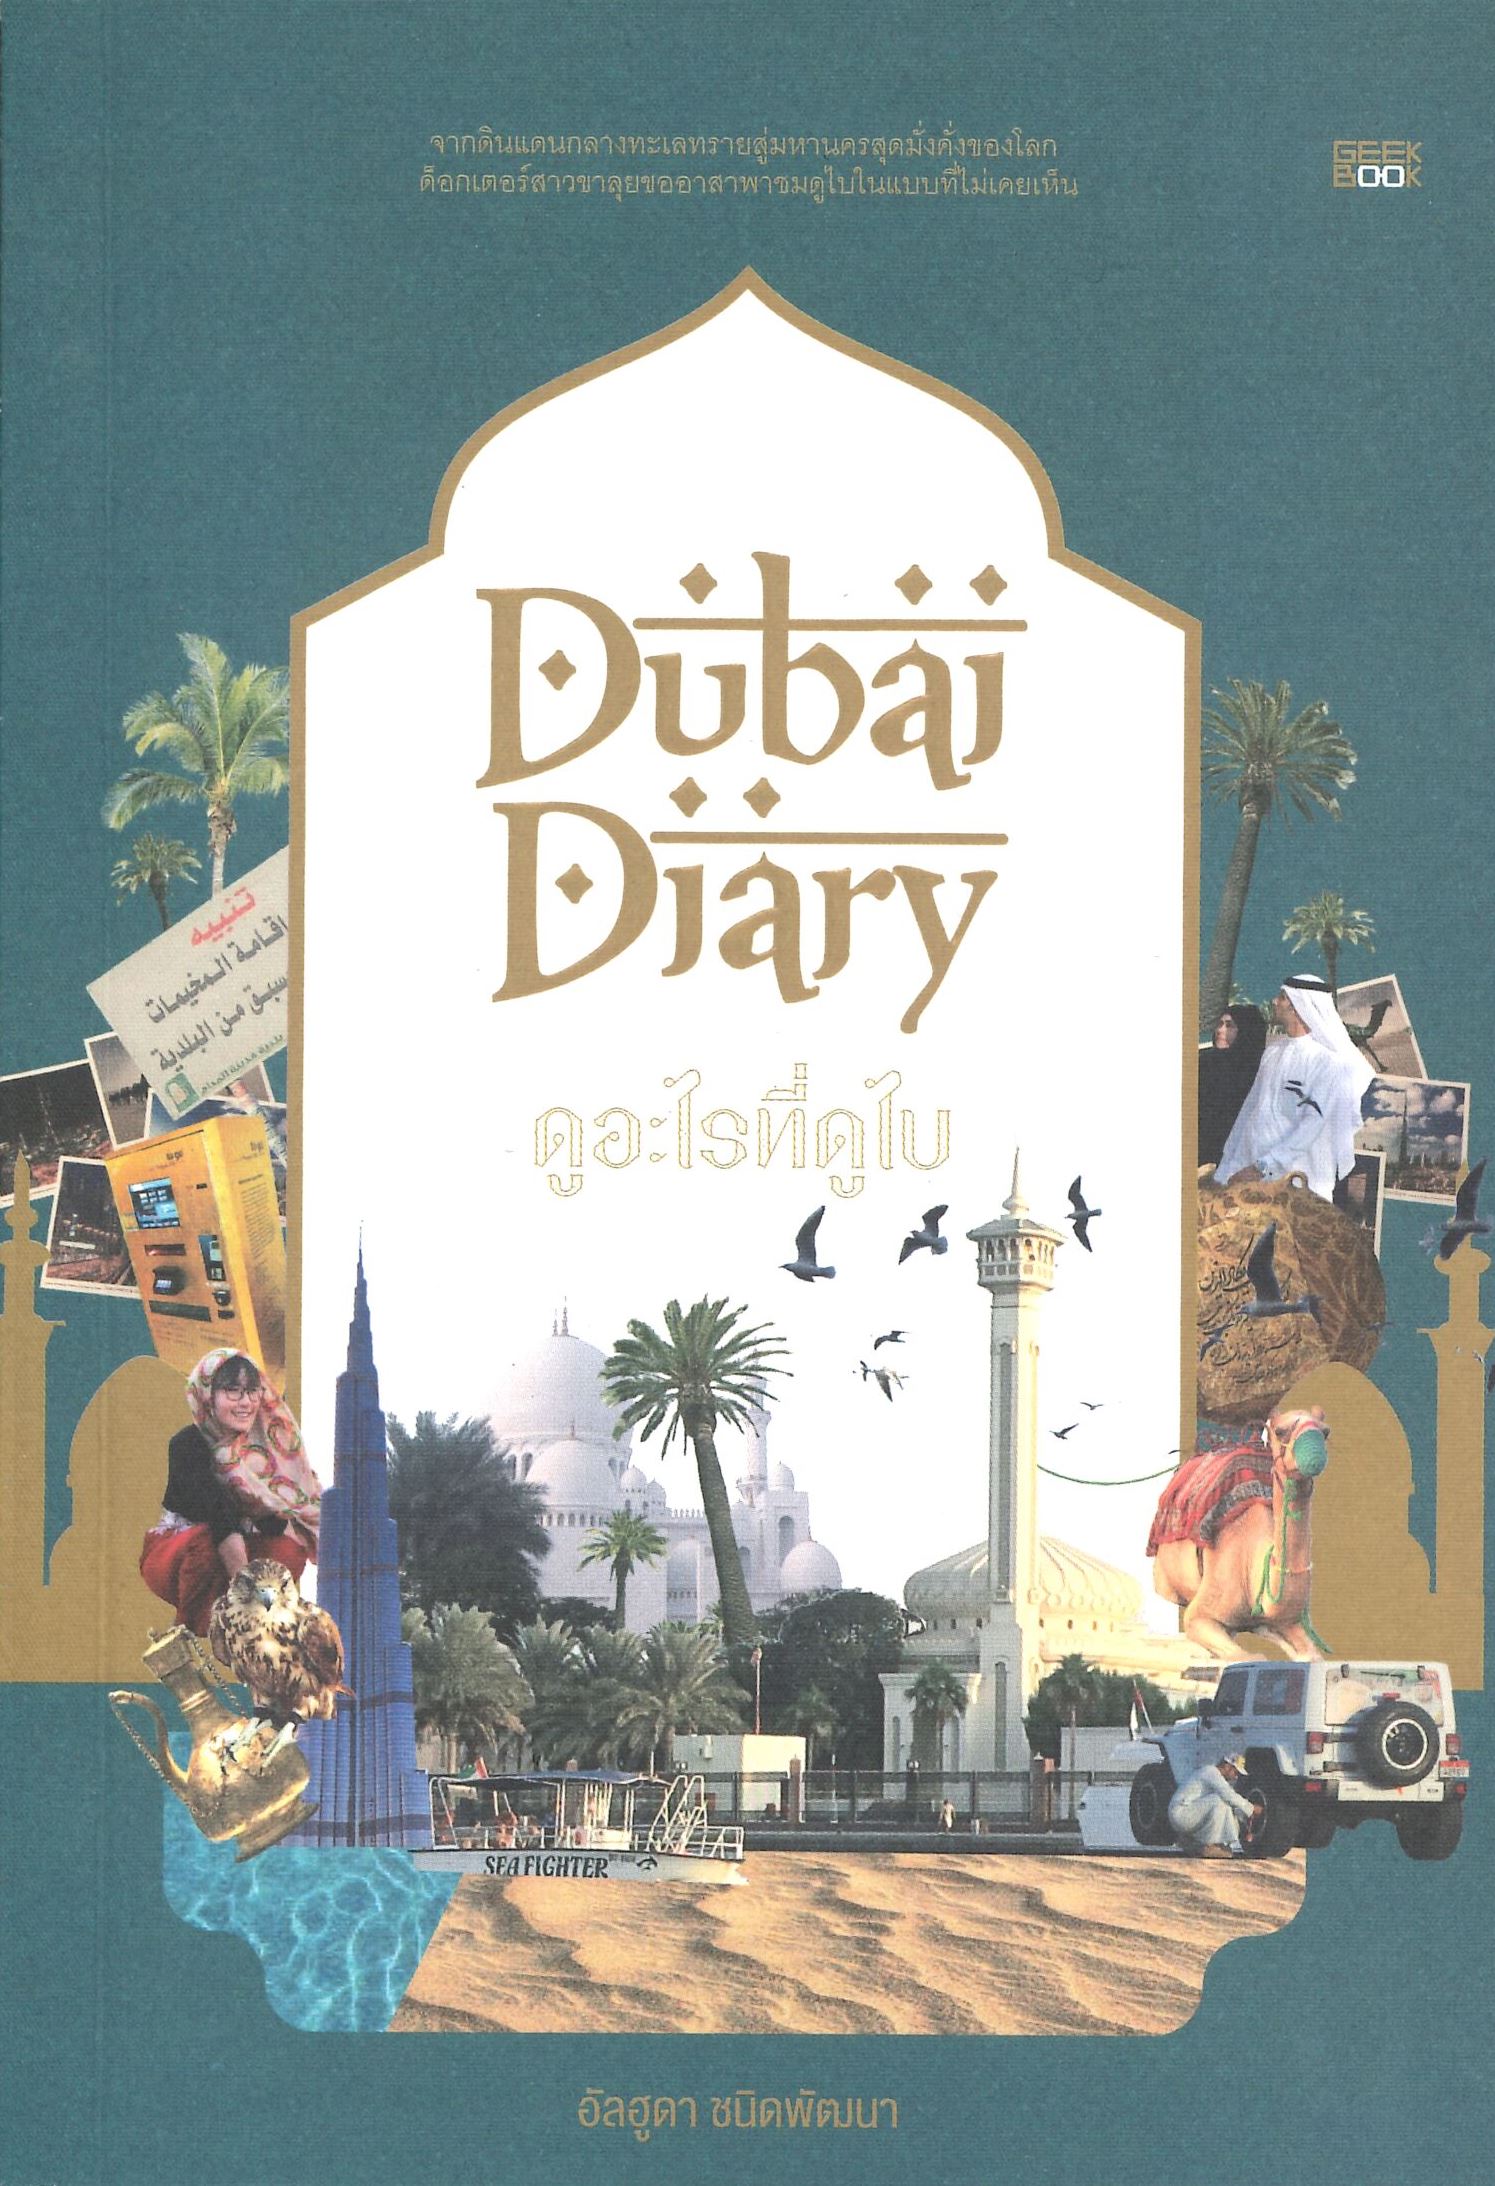 นายอินทร์ Dubai Diary ดูอะไรที่ดูไบ